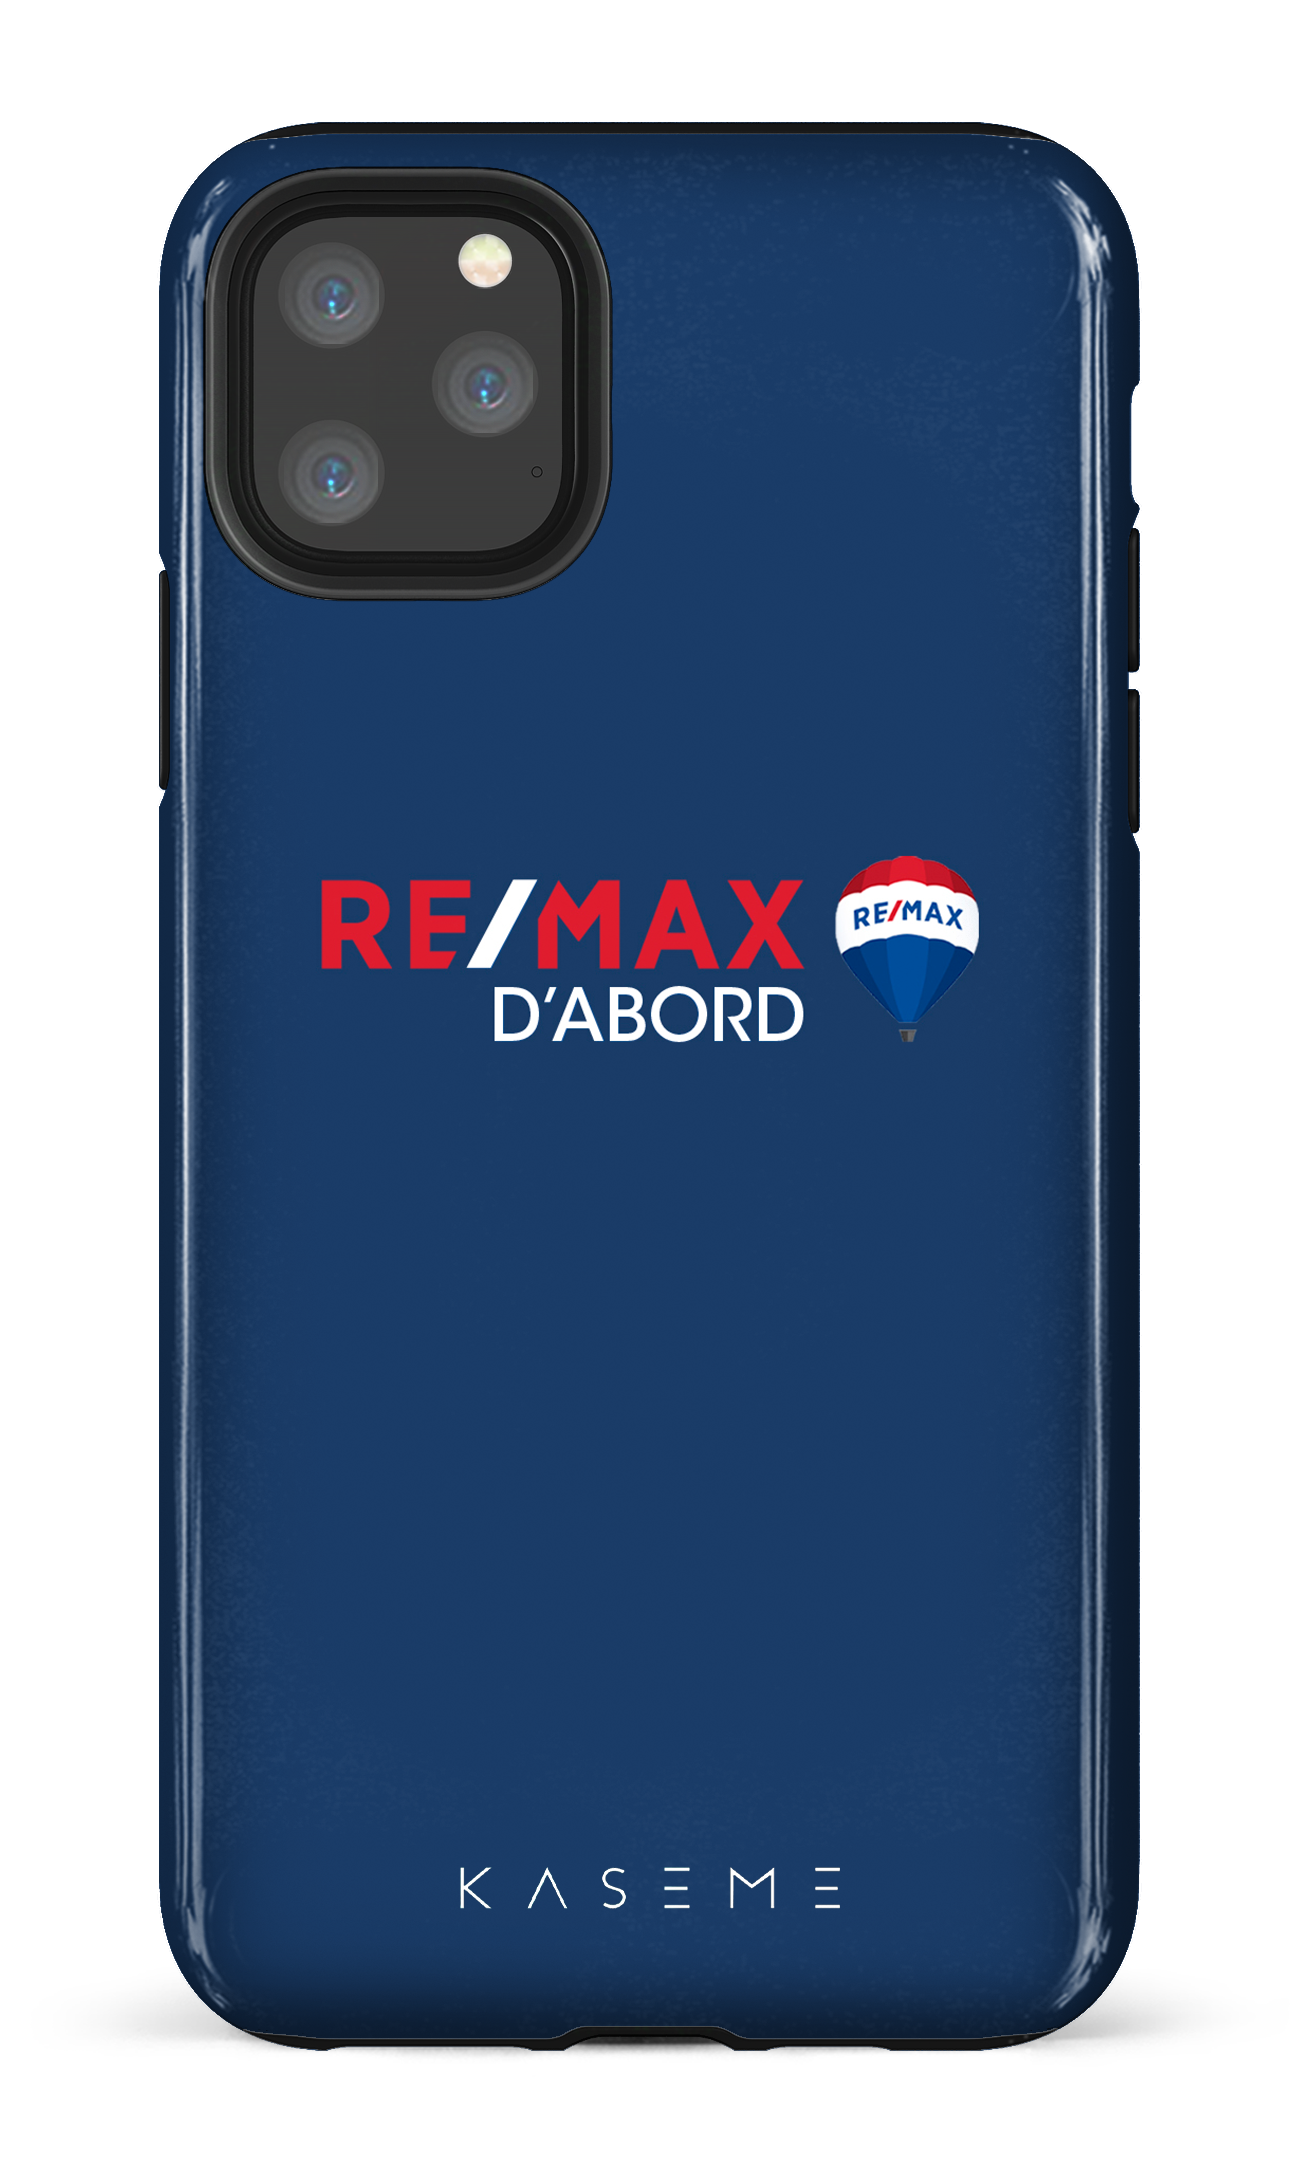 Remax D'abord Bleu - iPhone 11 Pro Max